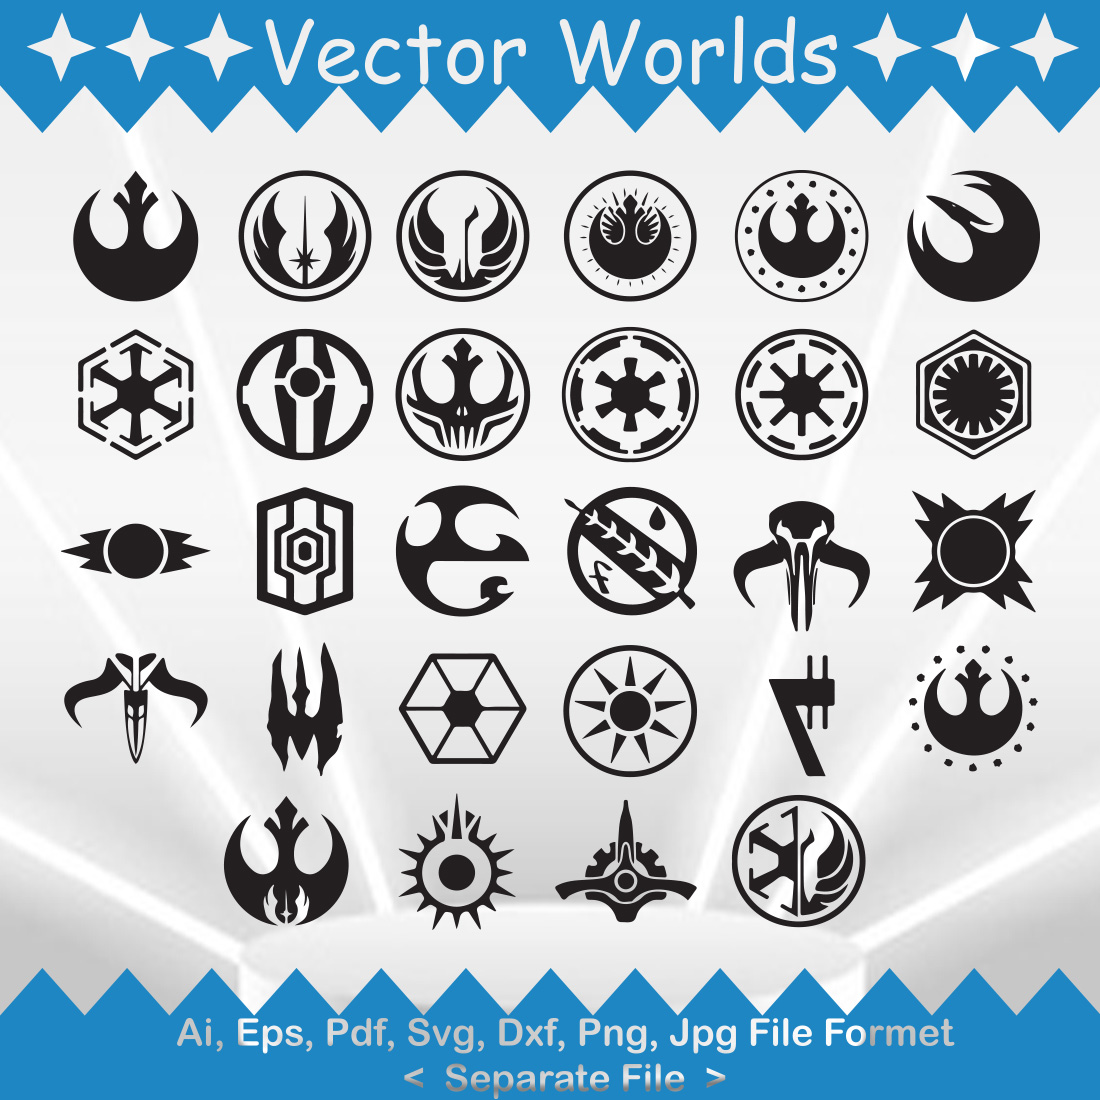 Star Wars SVG Vector Design preview image.